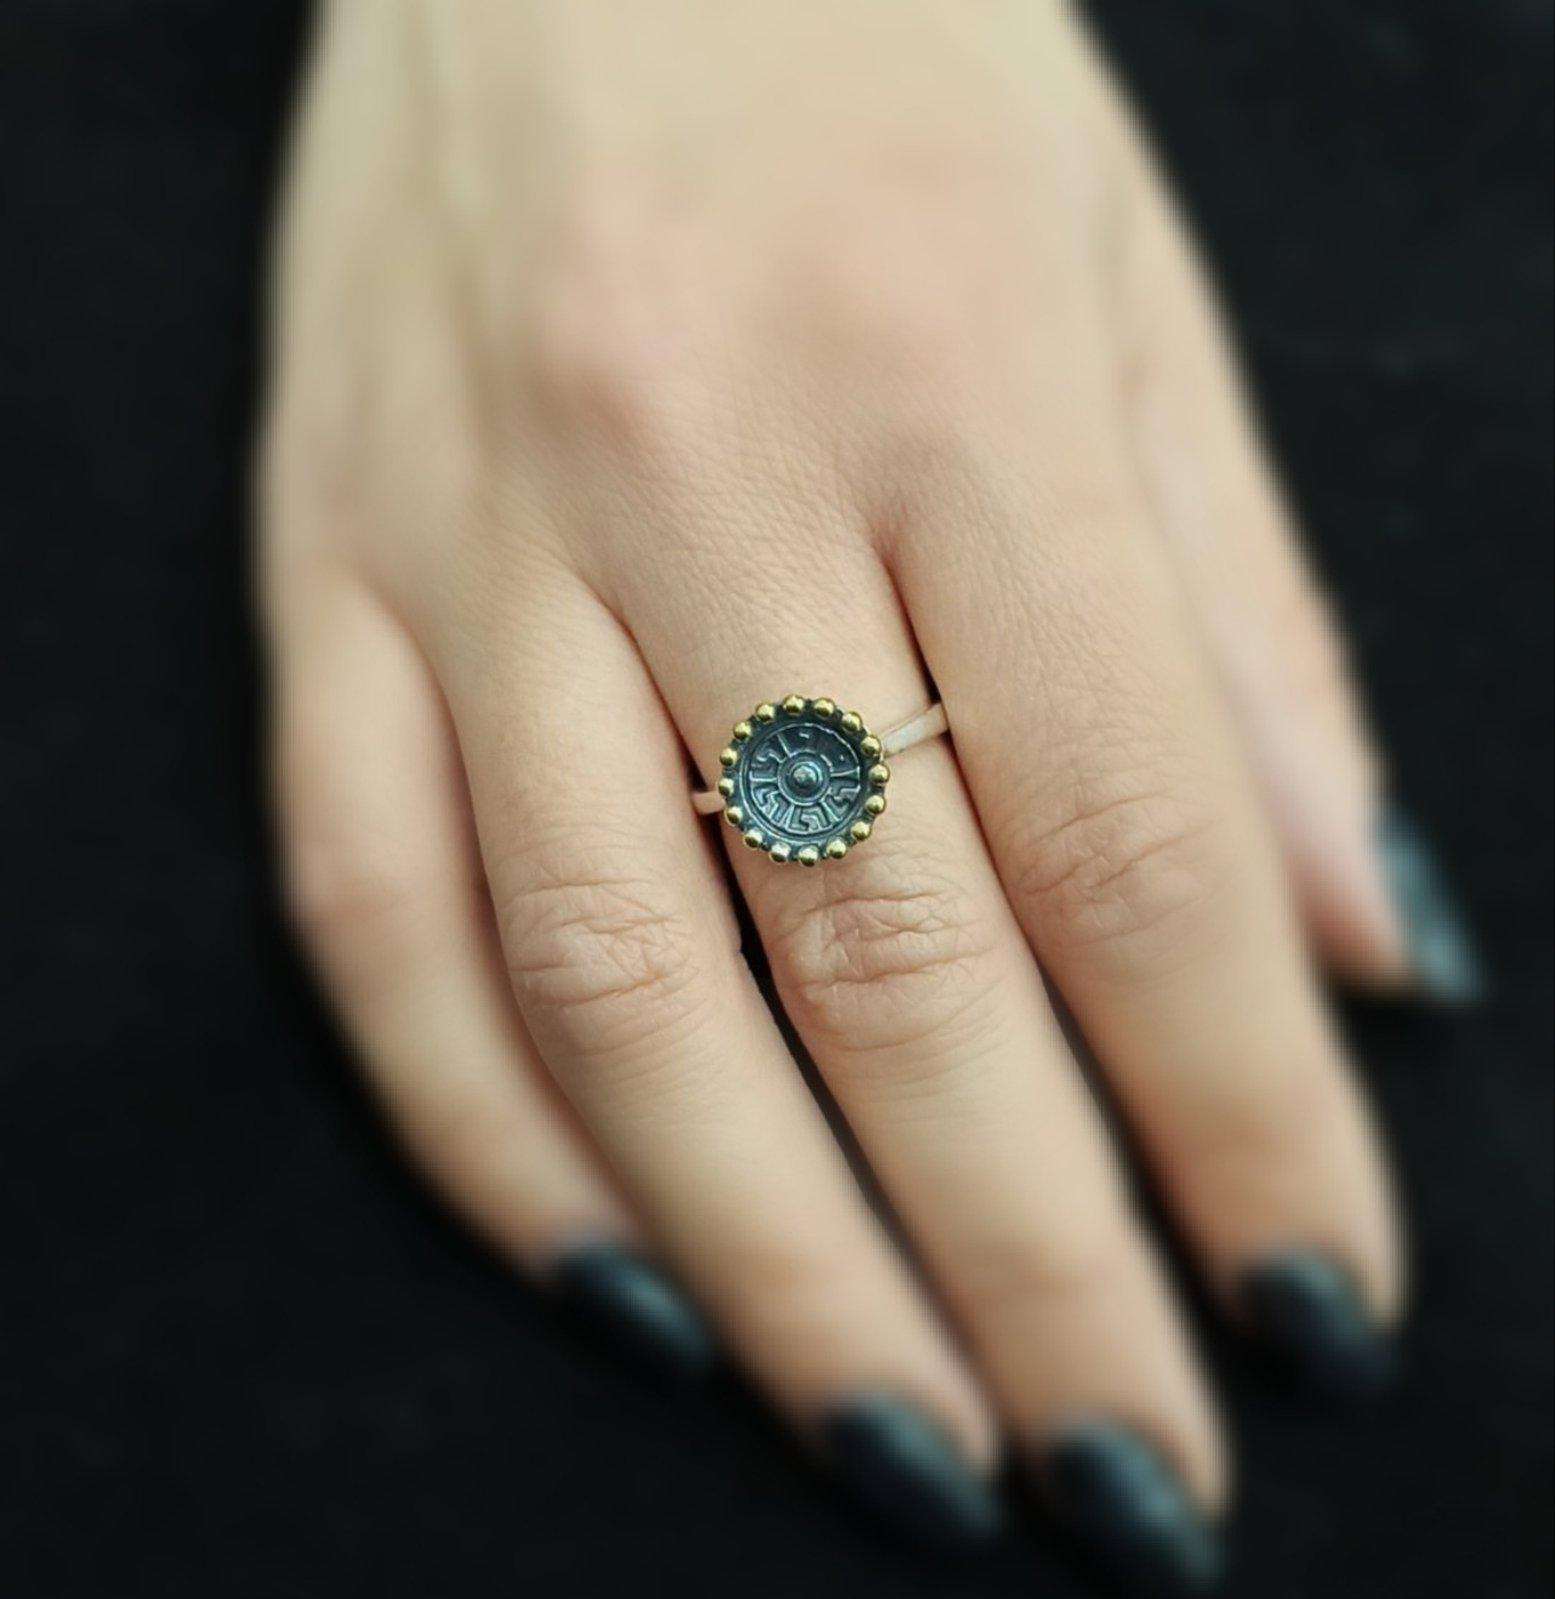 Дамски сребърен пръстен с основен елемент вдлъбнат кръг с орнаменти и оксидация, покрайчен с месингови точки.